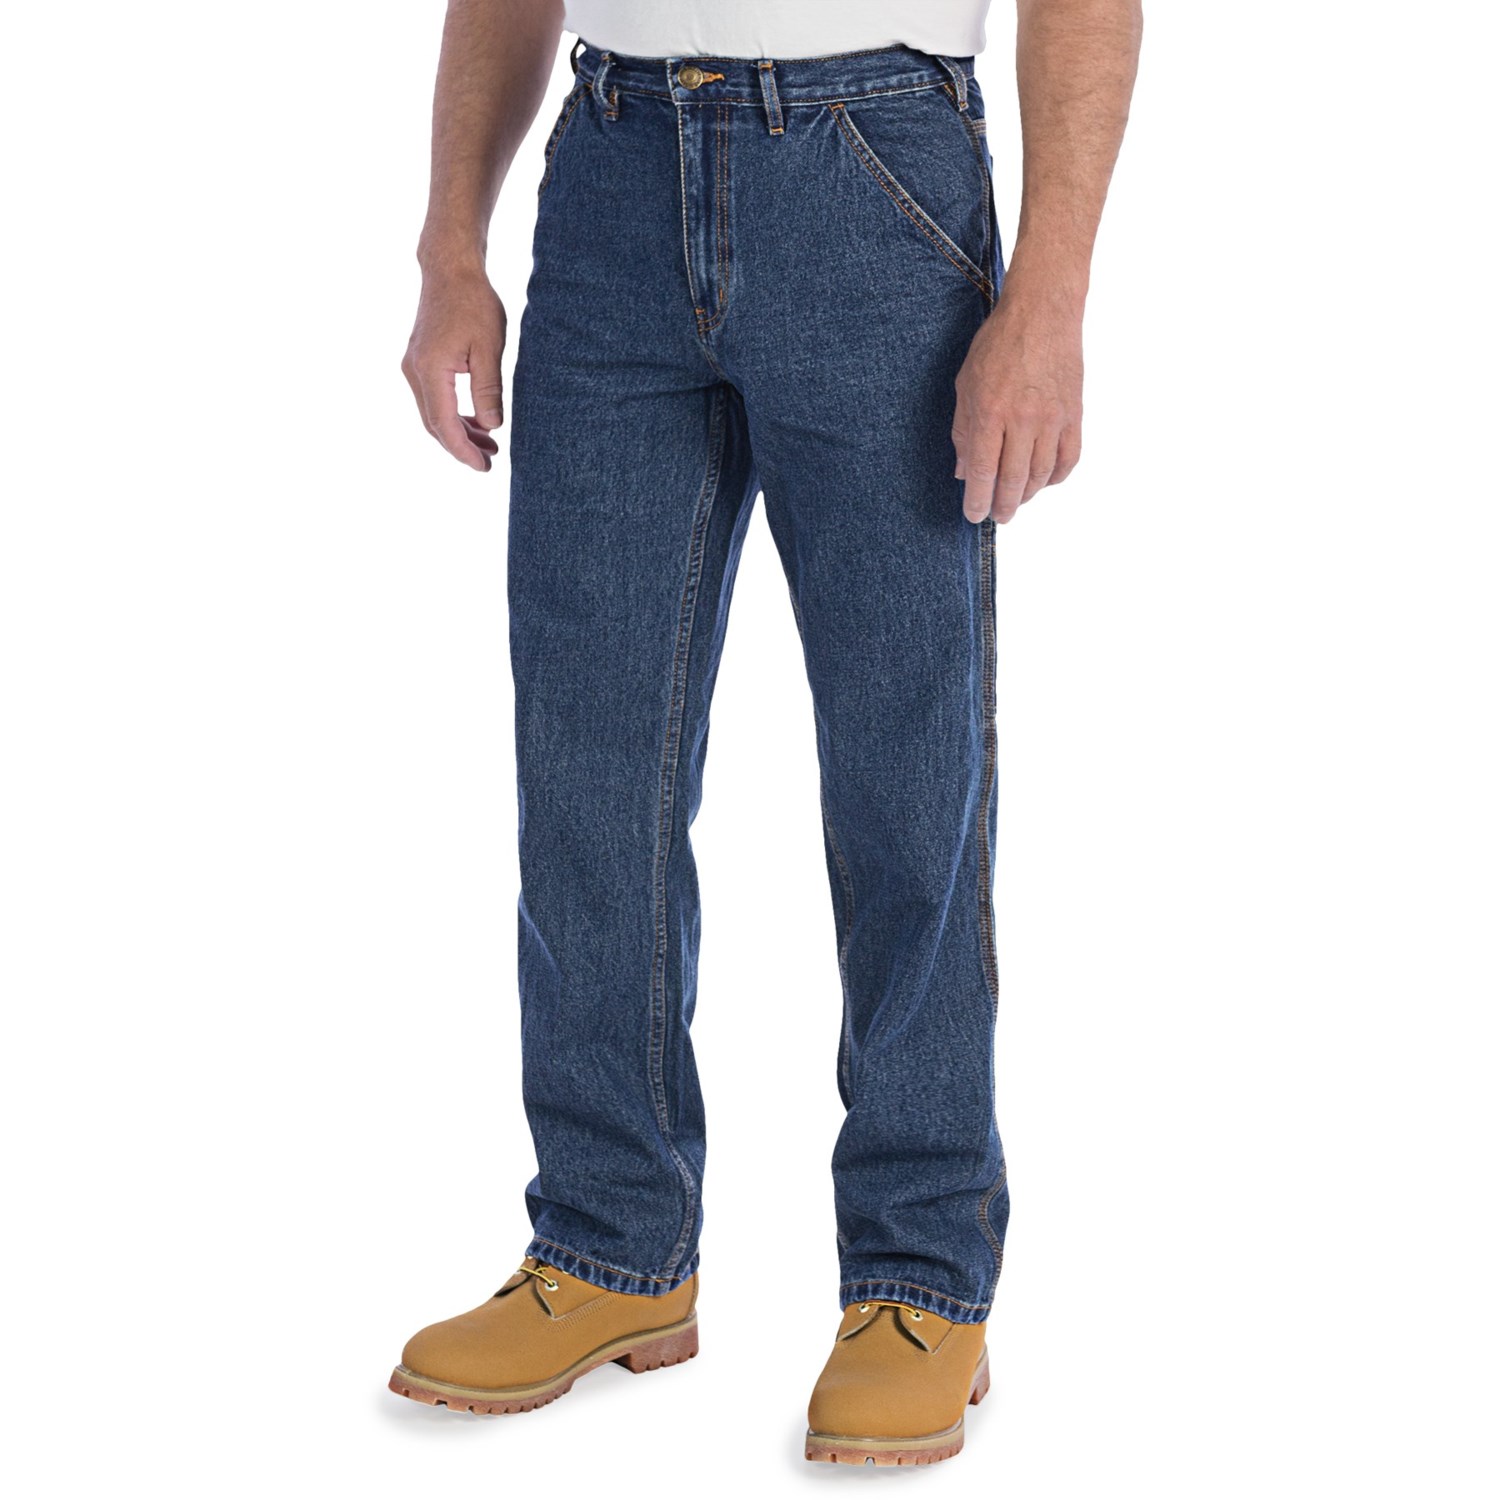 Wolverine Hammer Loop Jeans (For Men) 6293M - Save 46%